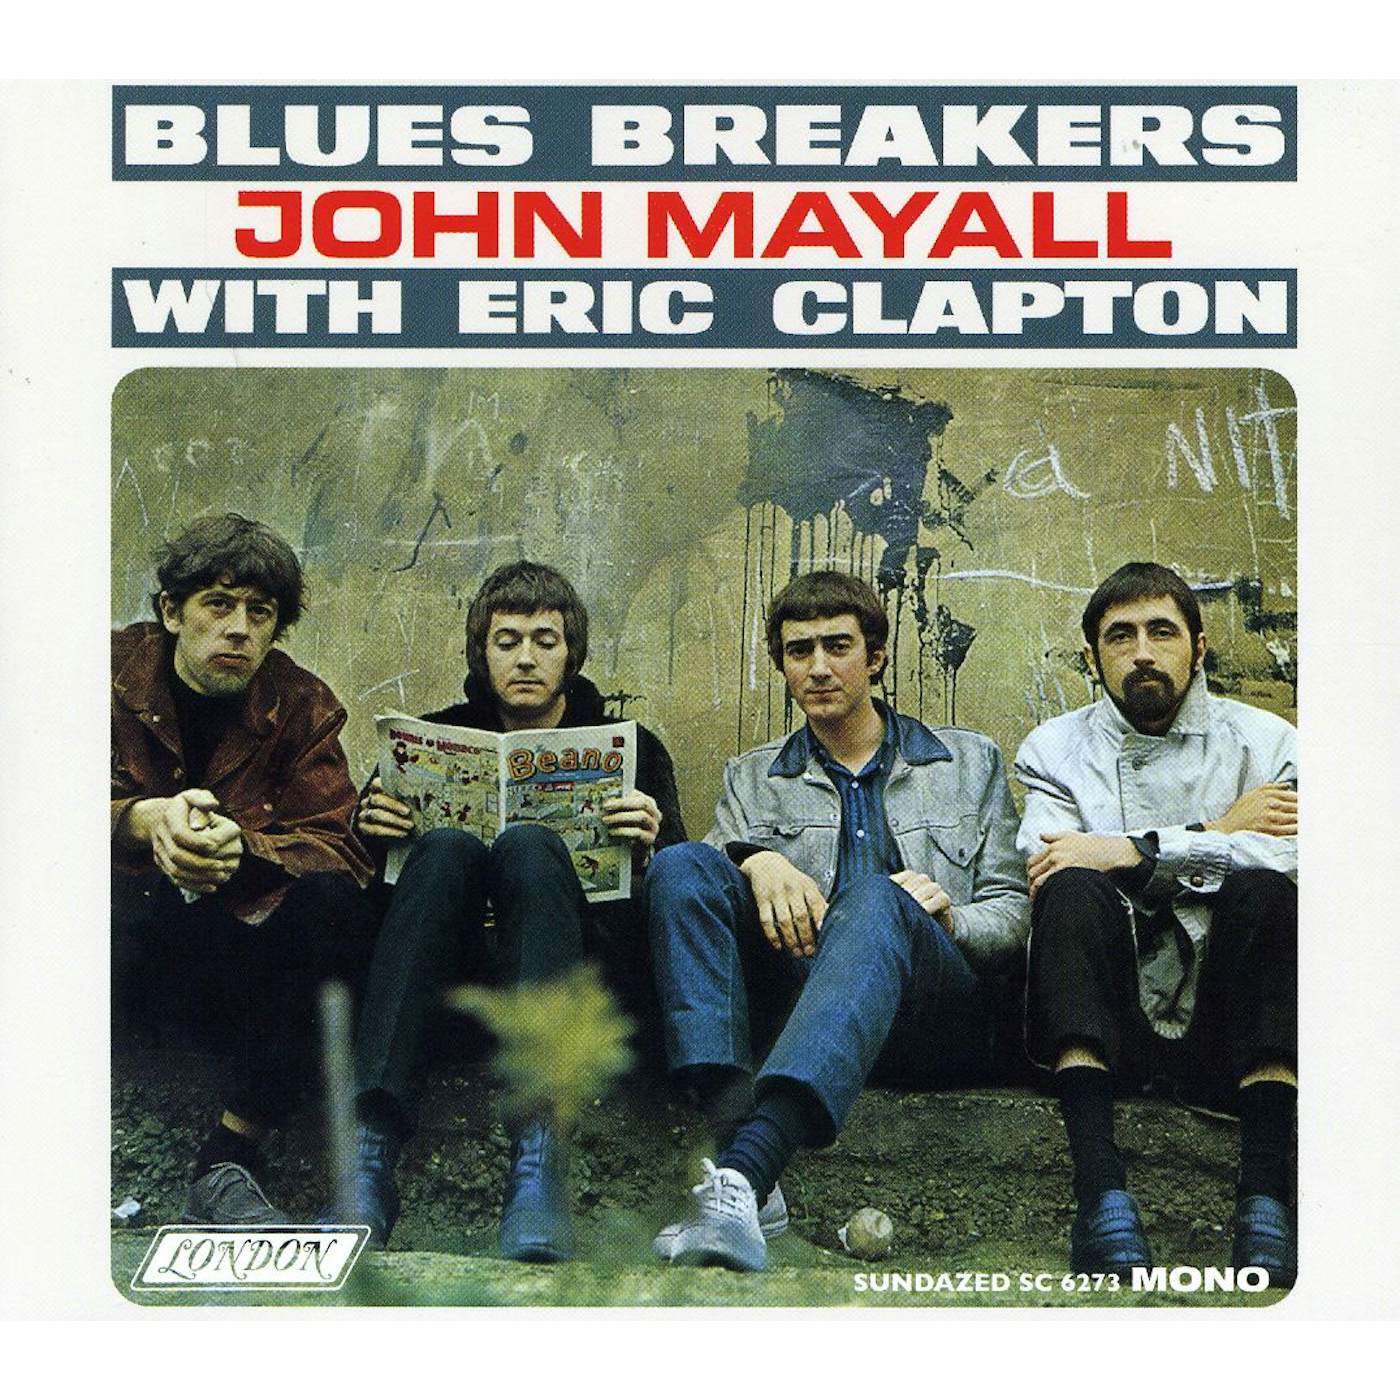 John Mayall & The Bluesbreakers BLUES BREAKERS CD